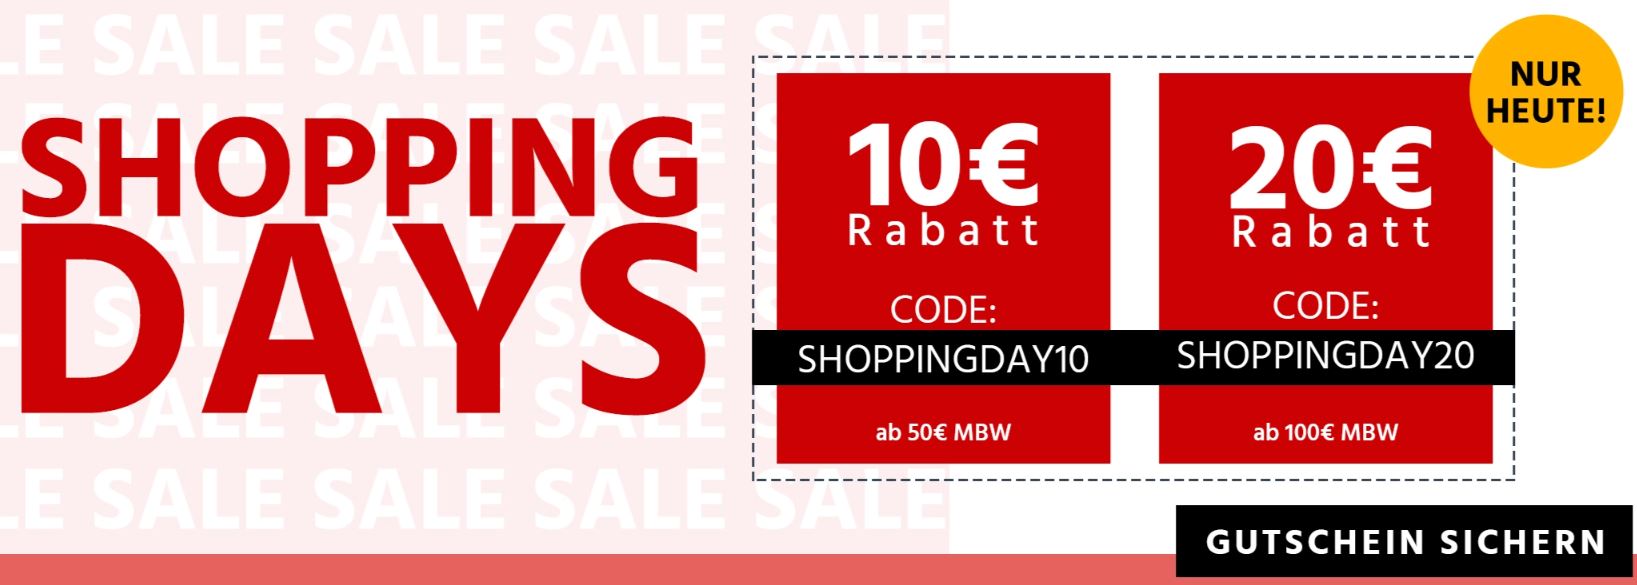 Shopping Days bei Jeans Direct mit bis zu 20€ Gutschein-Rabatt